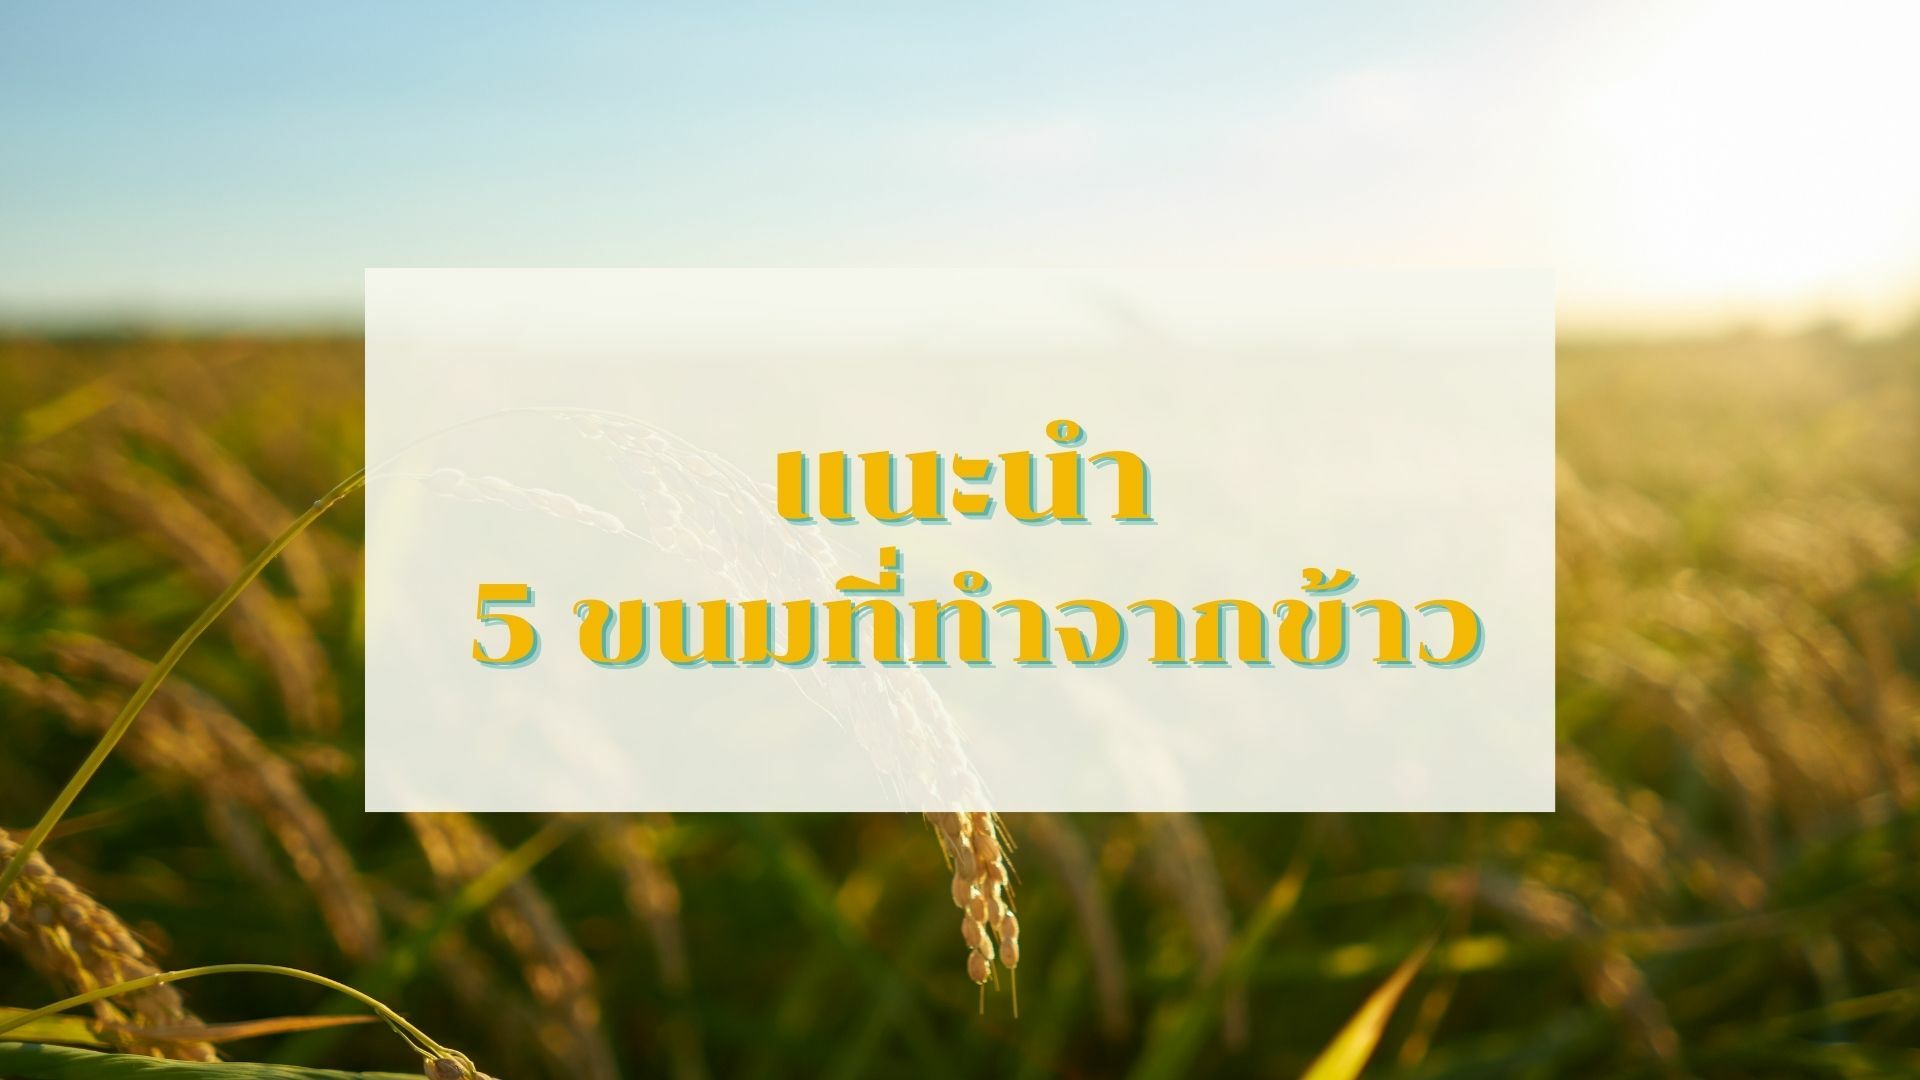 แนะนำ 5 ขนมที่ทำจากข้าว พร้อม วิธีการทำ ขนมไทย ง่าย ๆ ทำตามได้ที่บ้าน